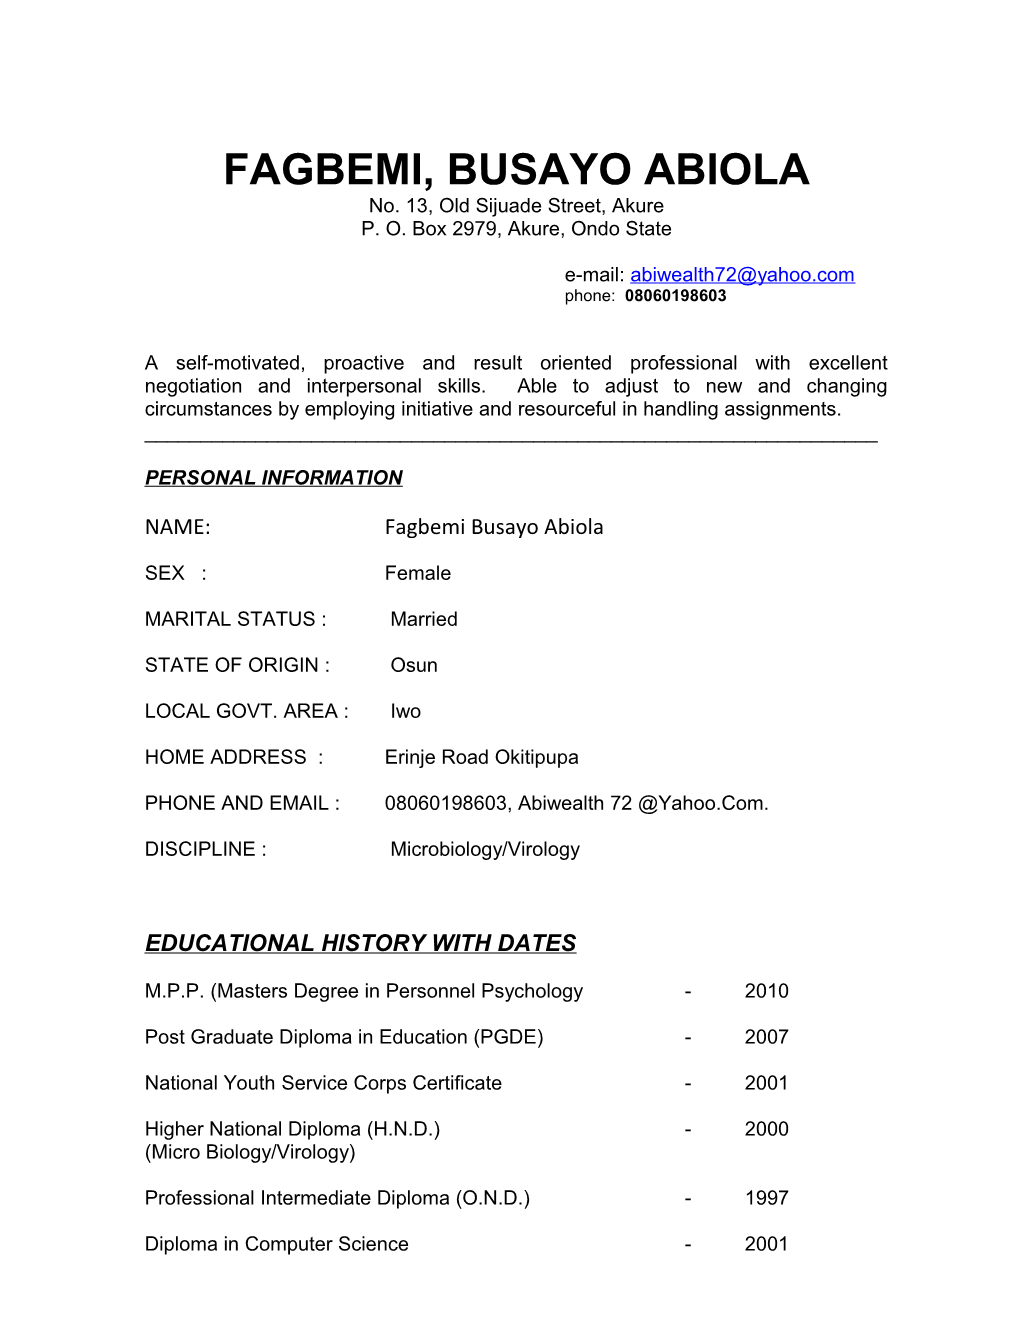 Fagbemi, Busayo Abiola